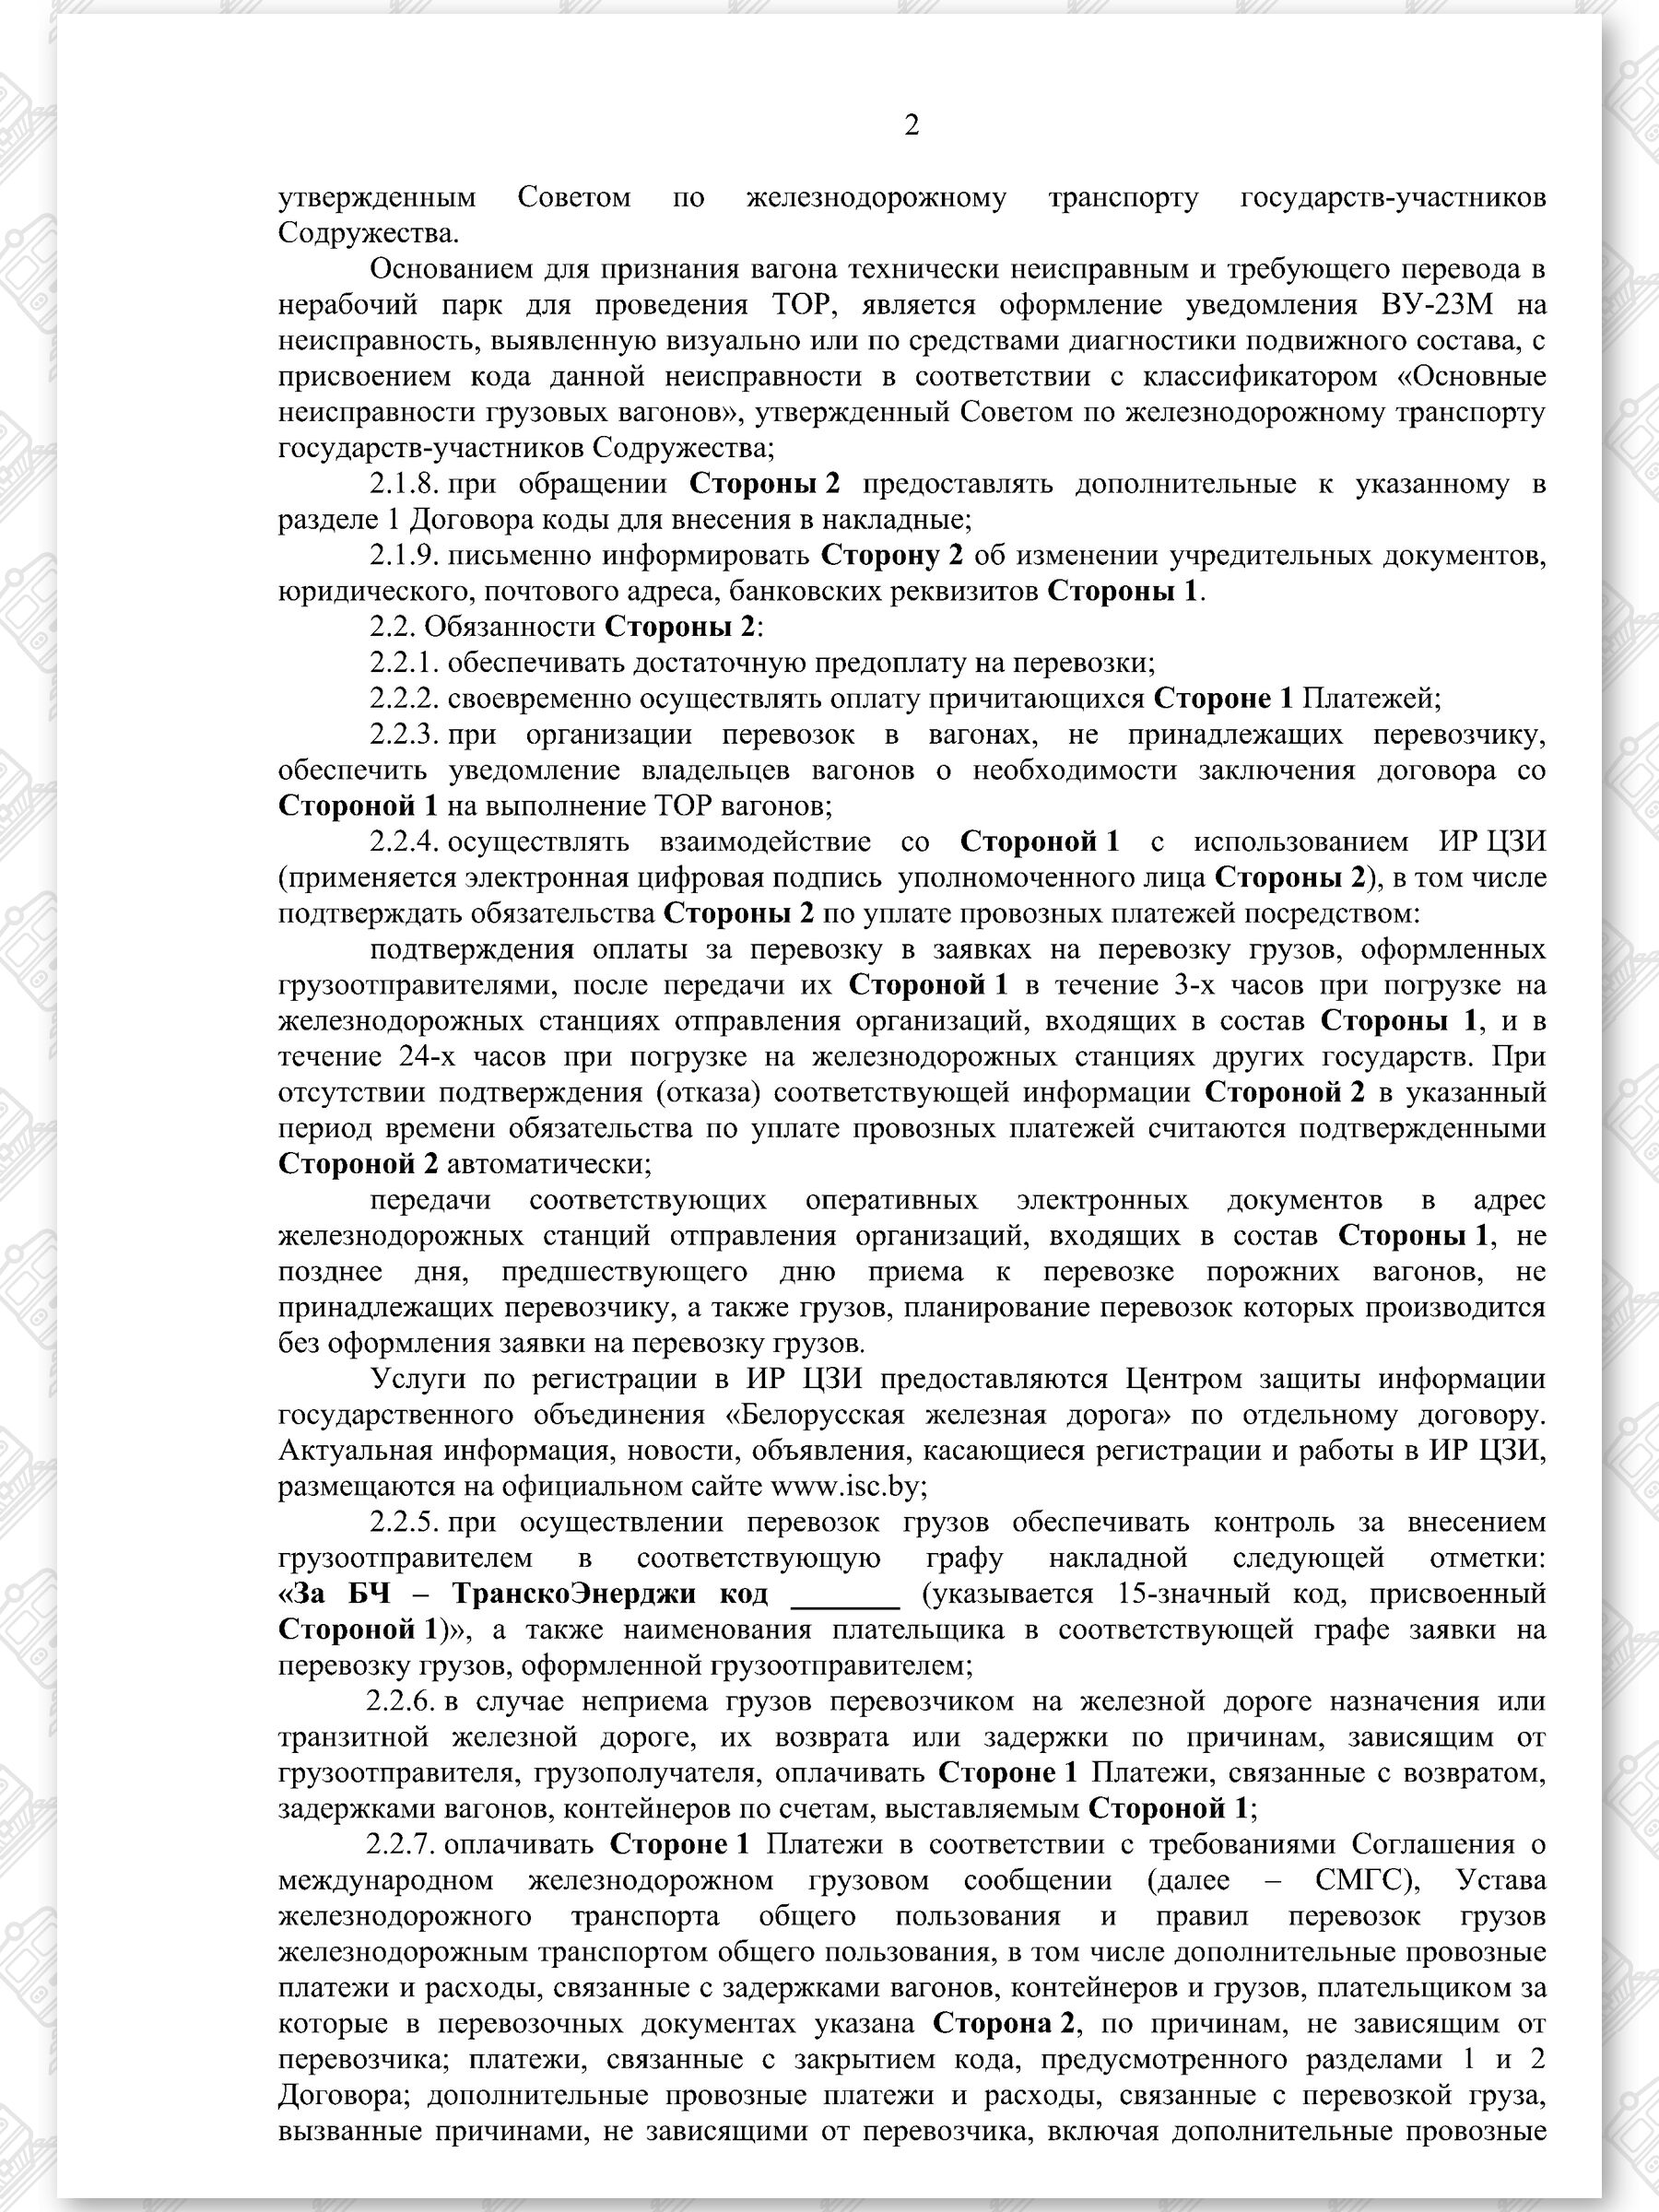 Договор на 2022 - 2024 гг. БЖД с ООО «ТранскоЭнерджи» (Страница 2)